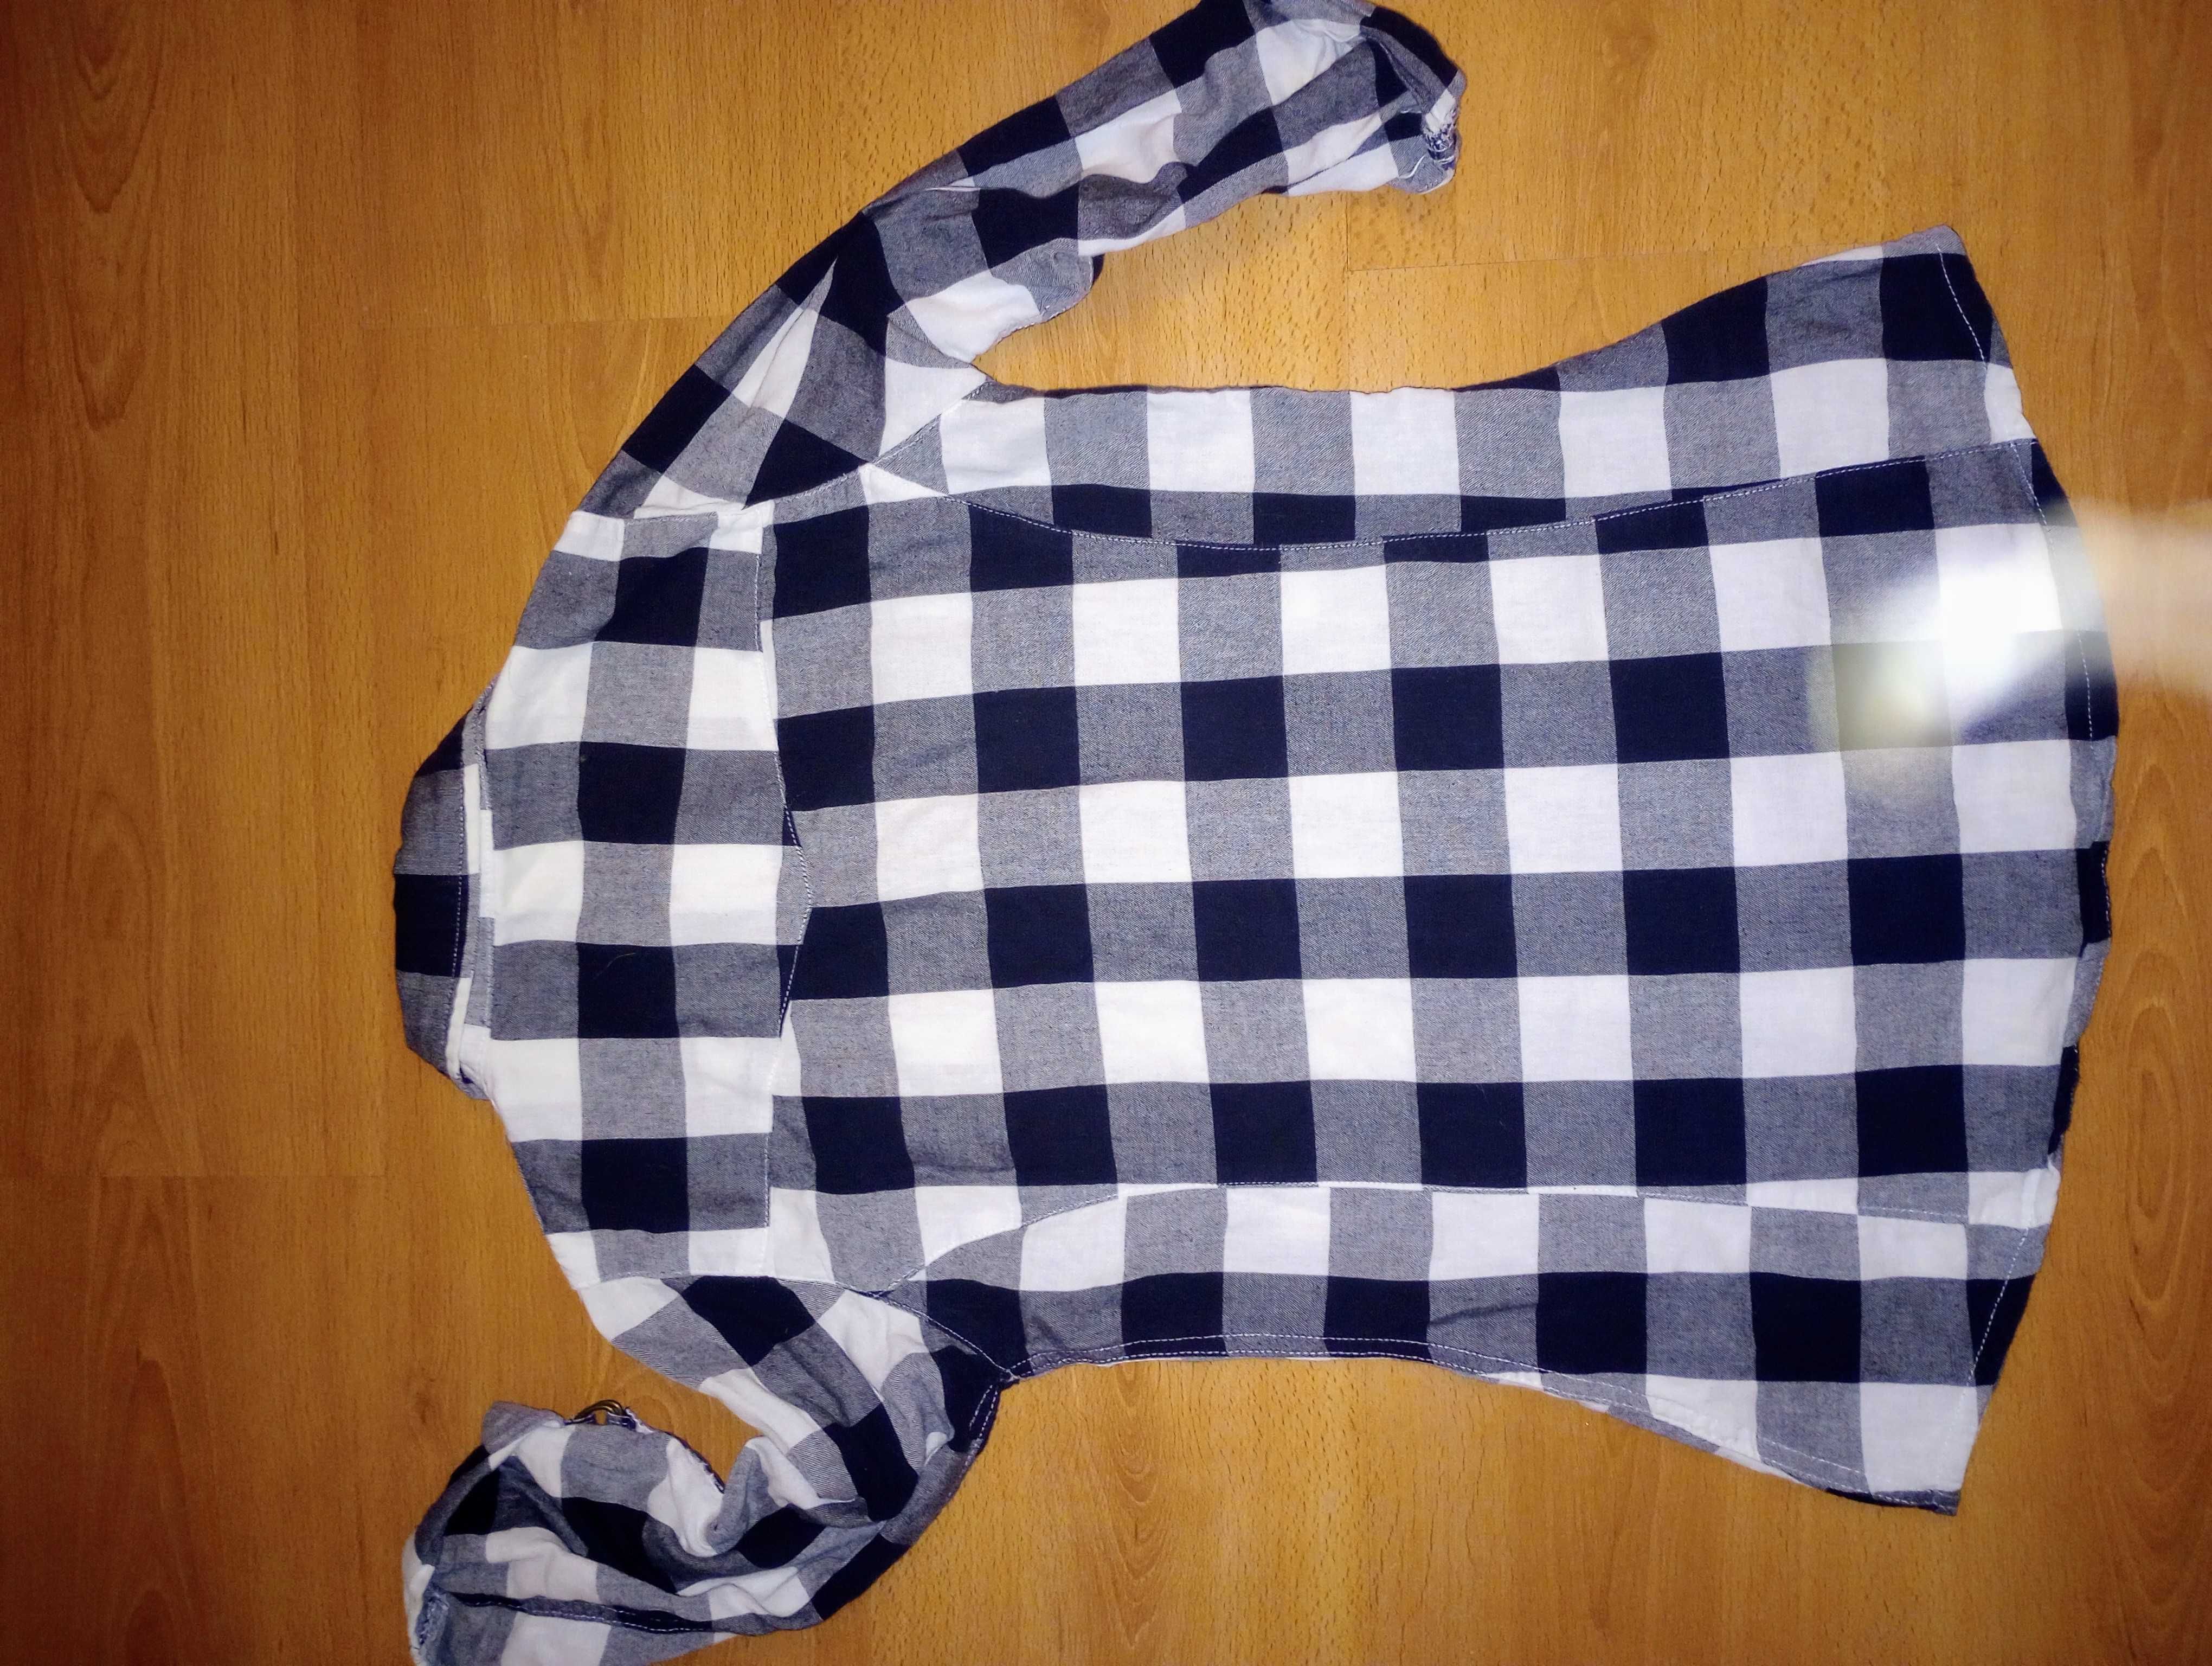 Tunika koszula dziewczęca 146 krata czarno-biały bdb